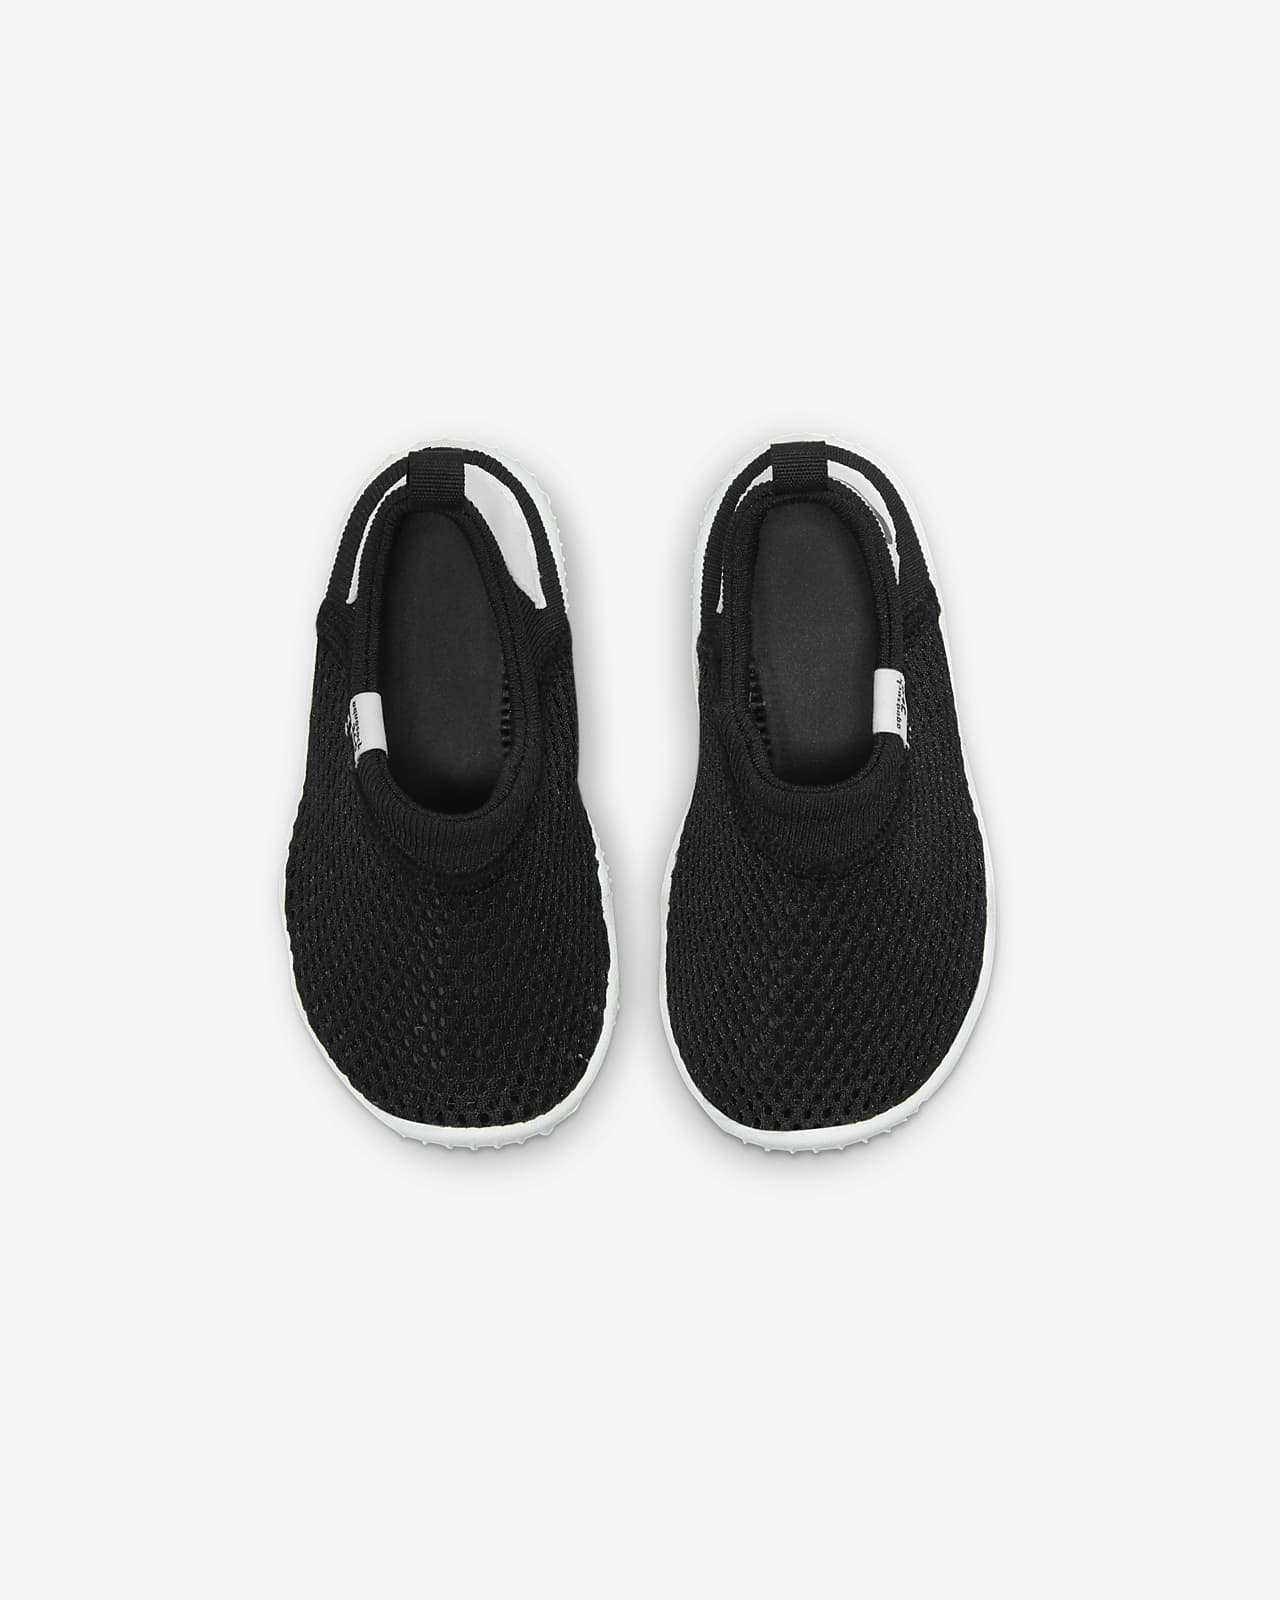 Calzado para bebés y niños pequeños Nike Sock 360.